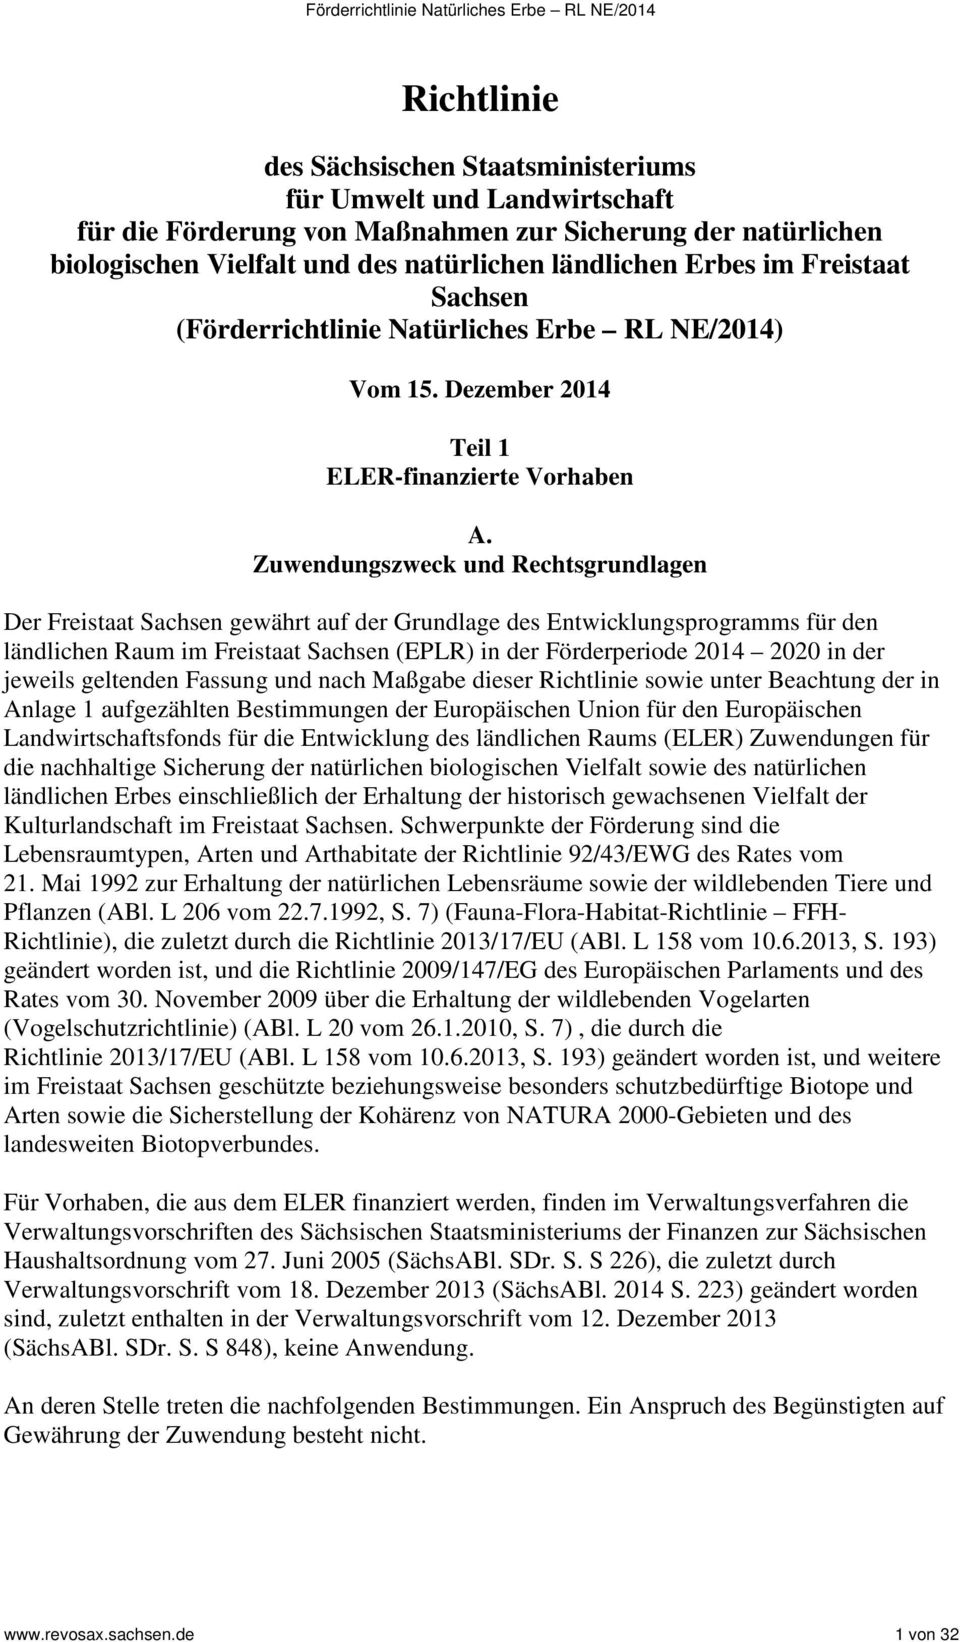 Zuwendungszweck und Rechtsgrundlagen Der Freistaat Sachsen gewährt auf der Grundlage des Entwicklungsprogramms für den ländlichen Raum im Freistaat Sachsen (EPLR) in der Förderperiode 2014 2020 in